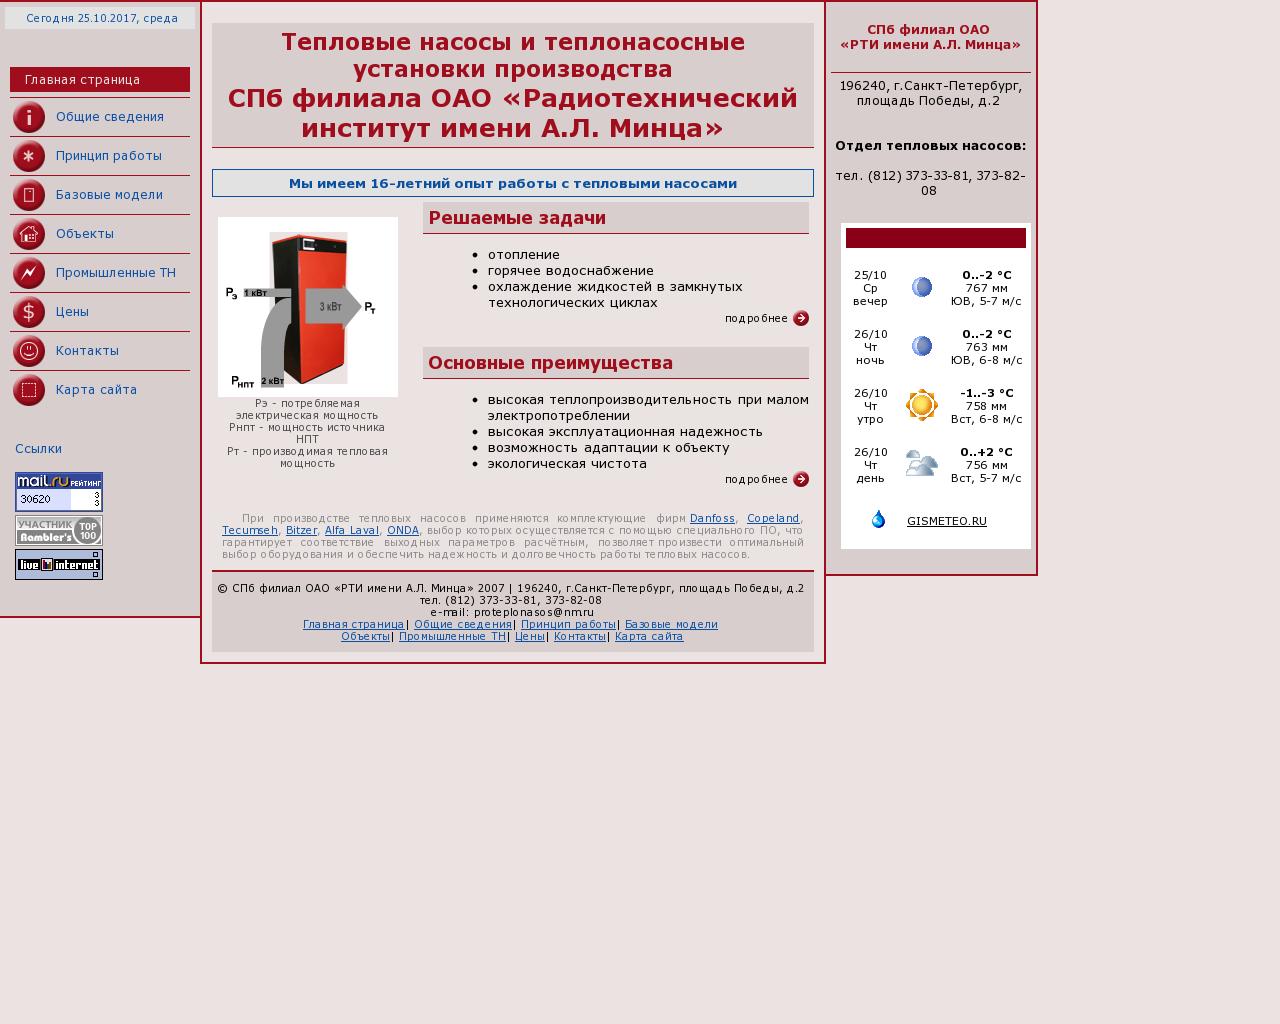 Изображение сайта proteplonasos.ru в разрешении 1280x1024